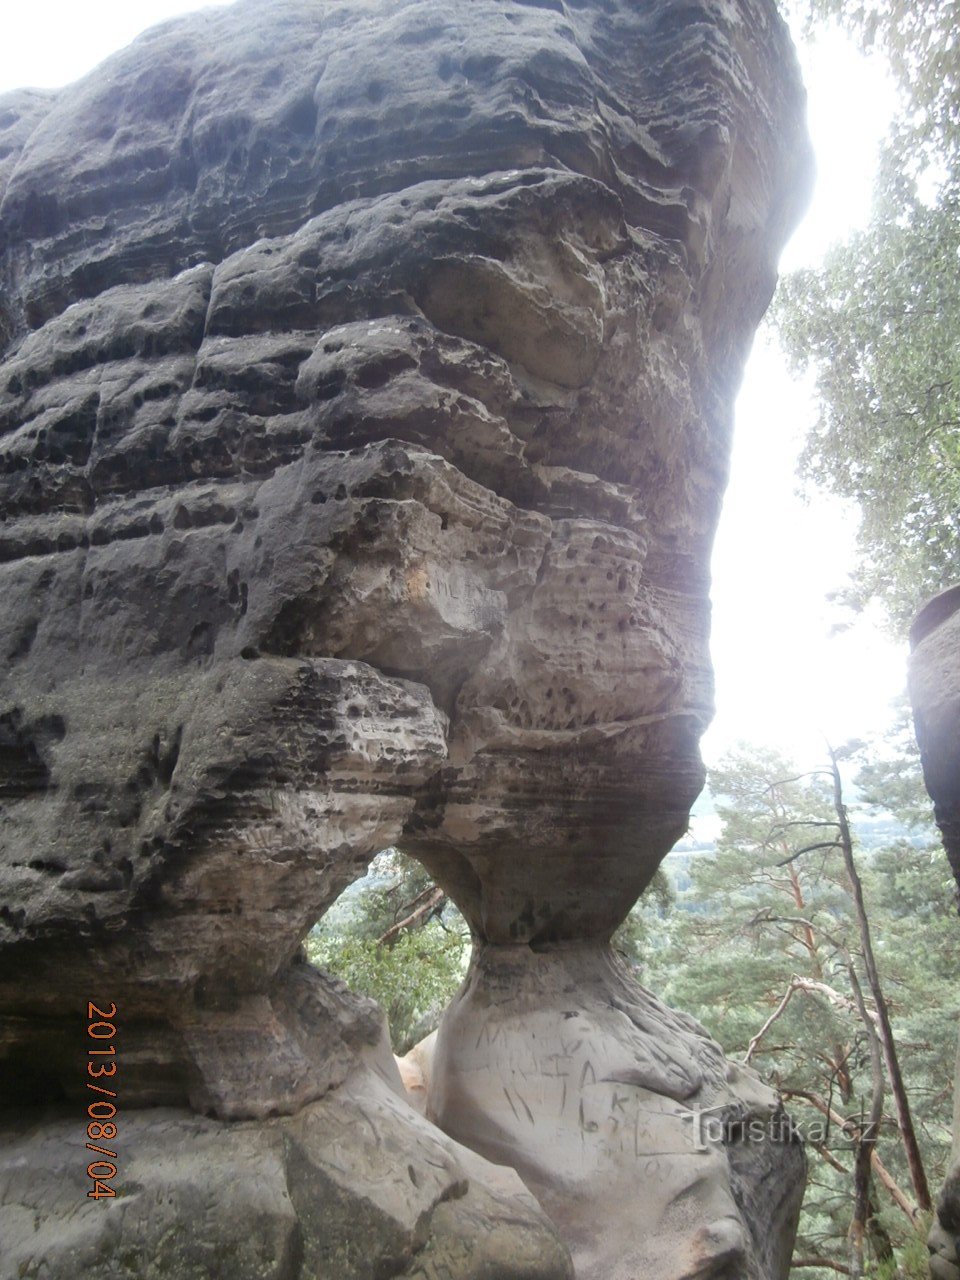 Příhrazské岩